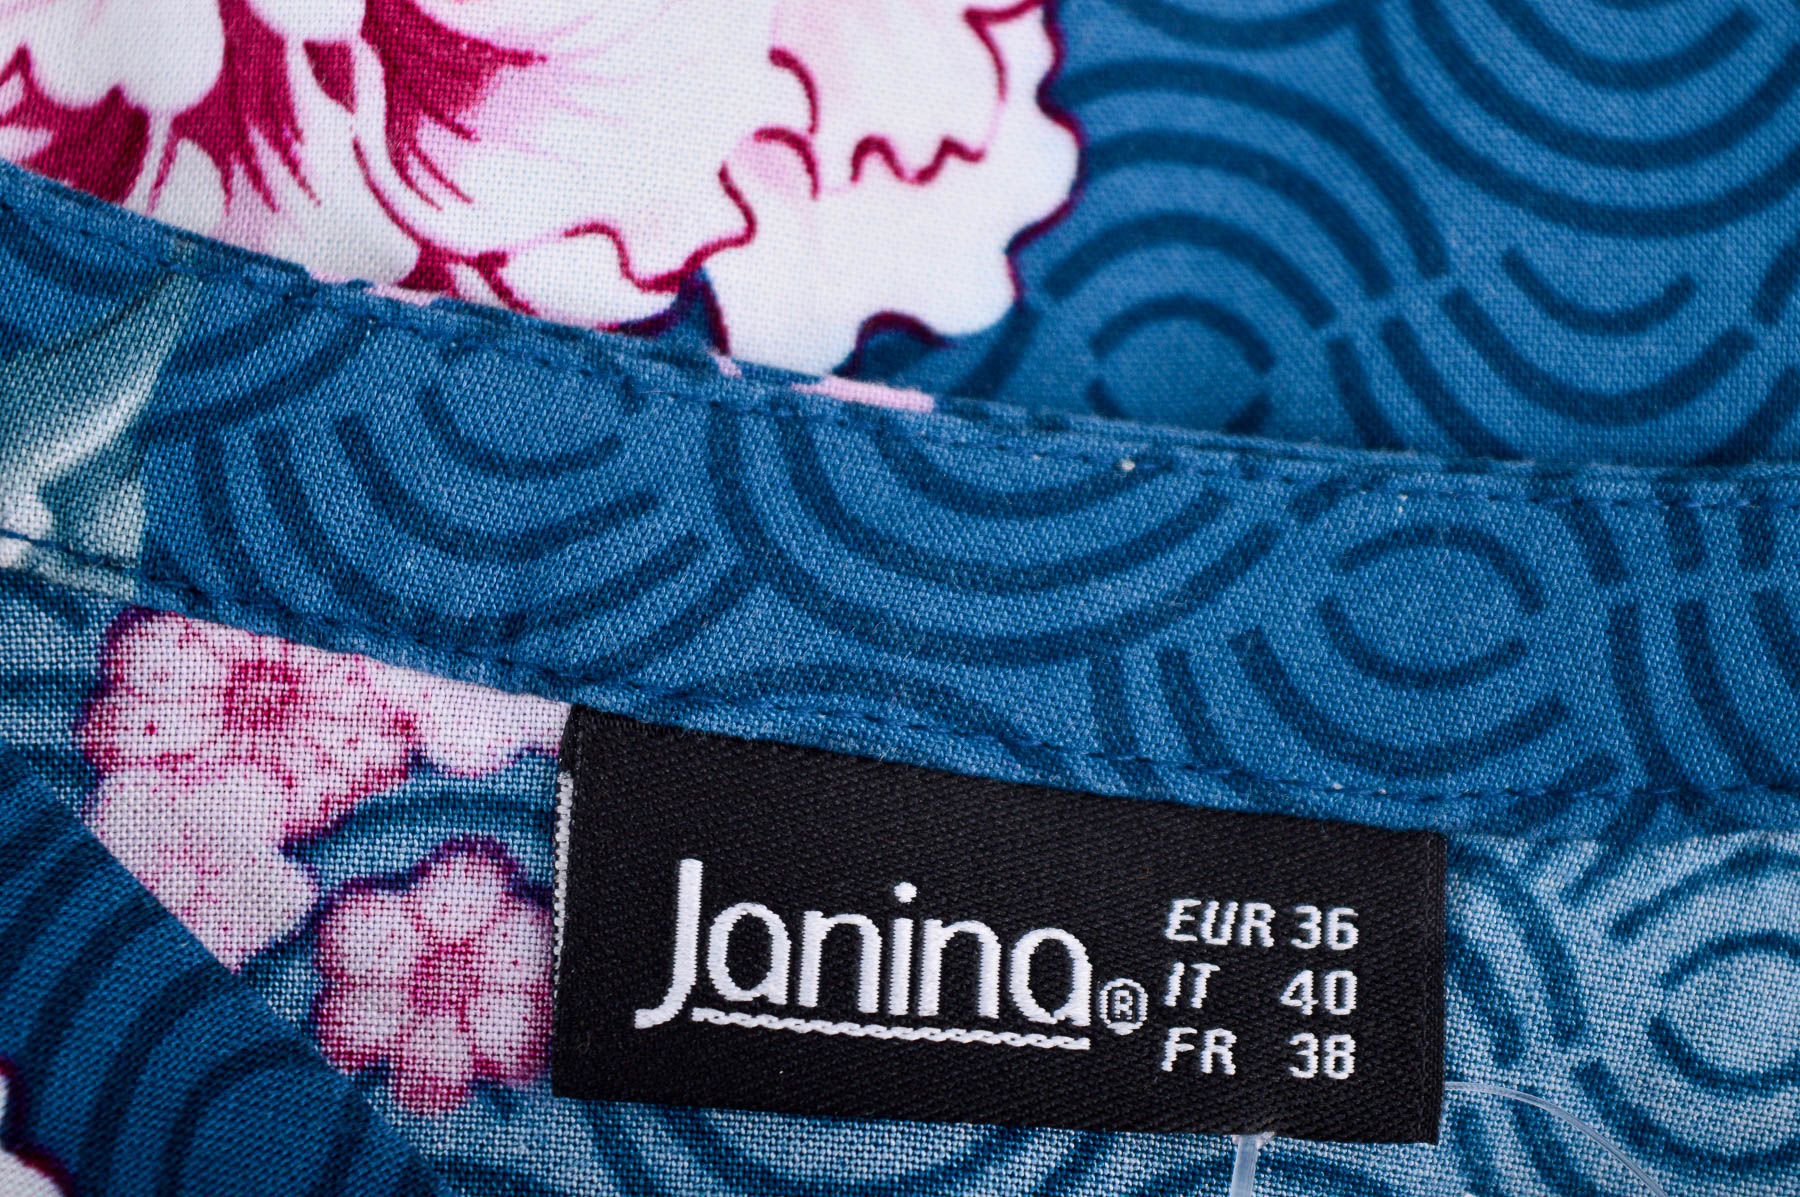 Γυναικείо πουκάμισο - Janina - 2